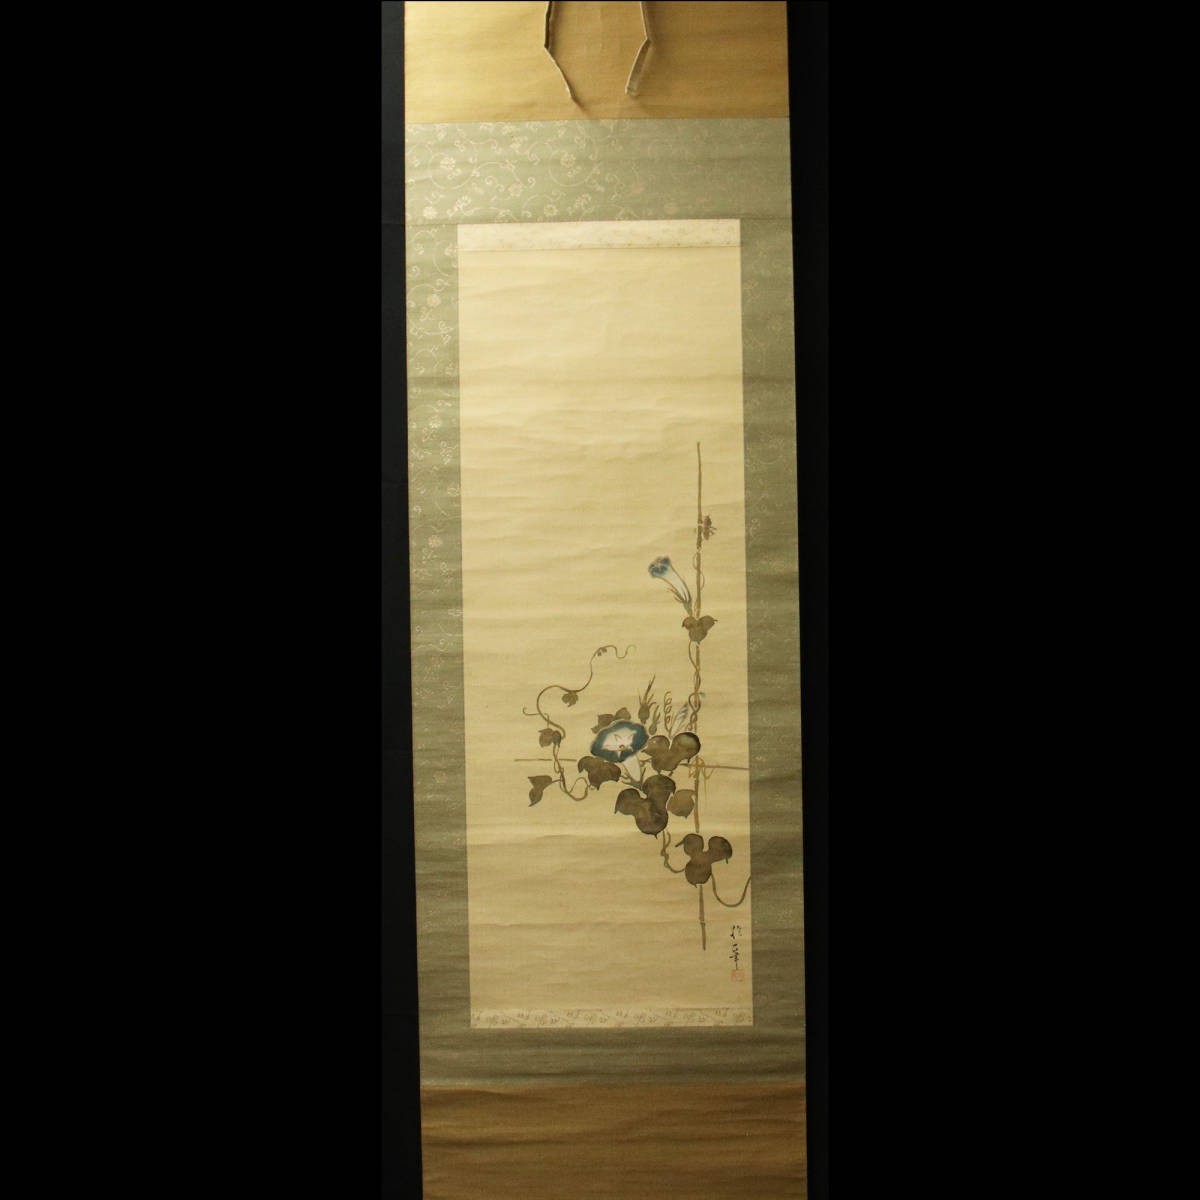 [Kopie] ■ Alte japanische Malerei ■ Papierbuch, angeblich geschrieben von Sakai Hoitsu, Prunkwinde (Meisterwerk: Sakai Doitsu) 230512046, Malerei, Japanische Malerei, Blumen und Vögel, Tierwelt